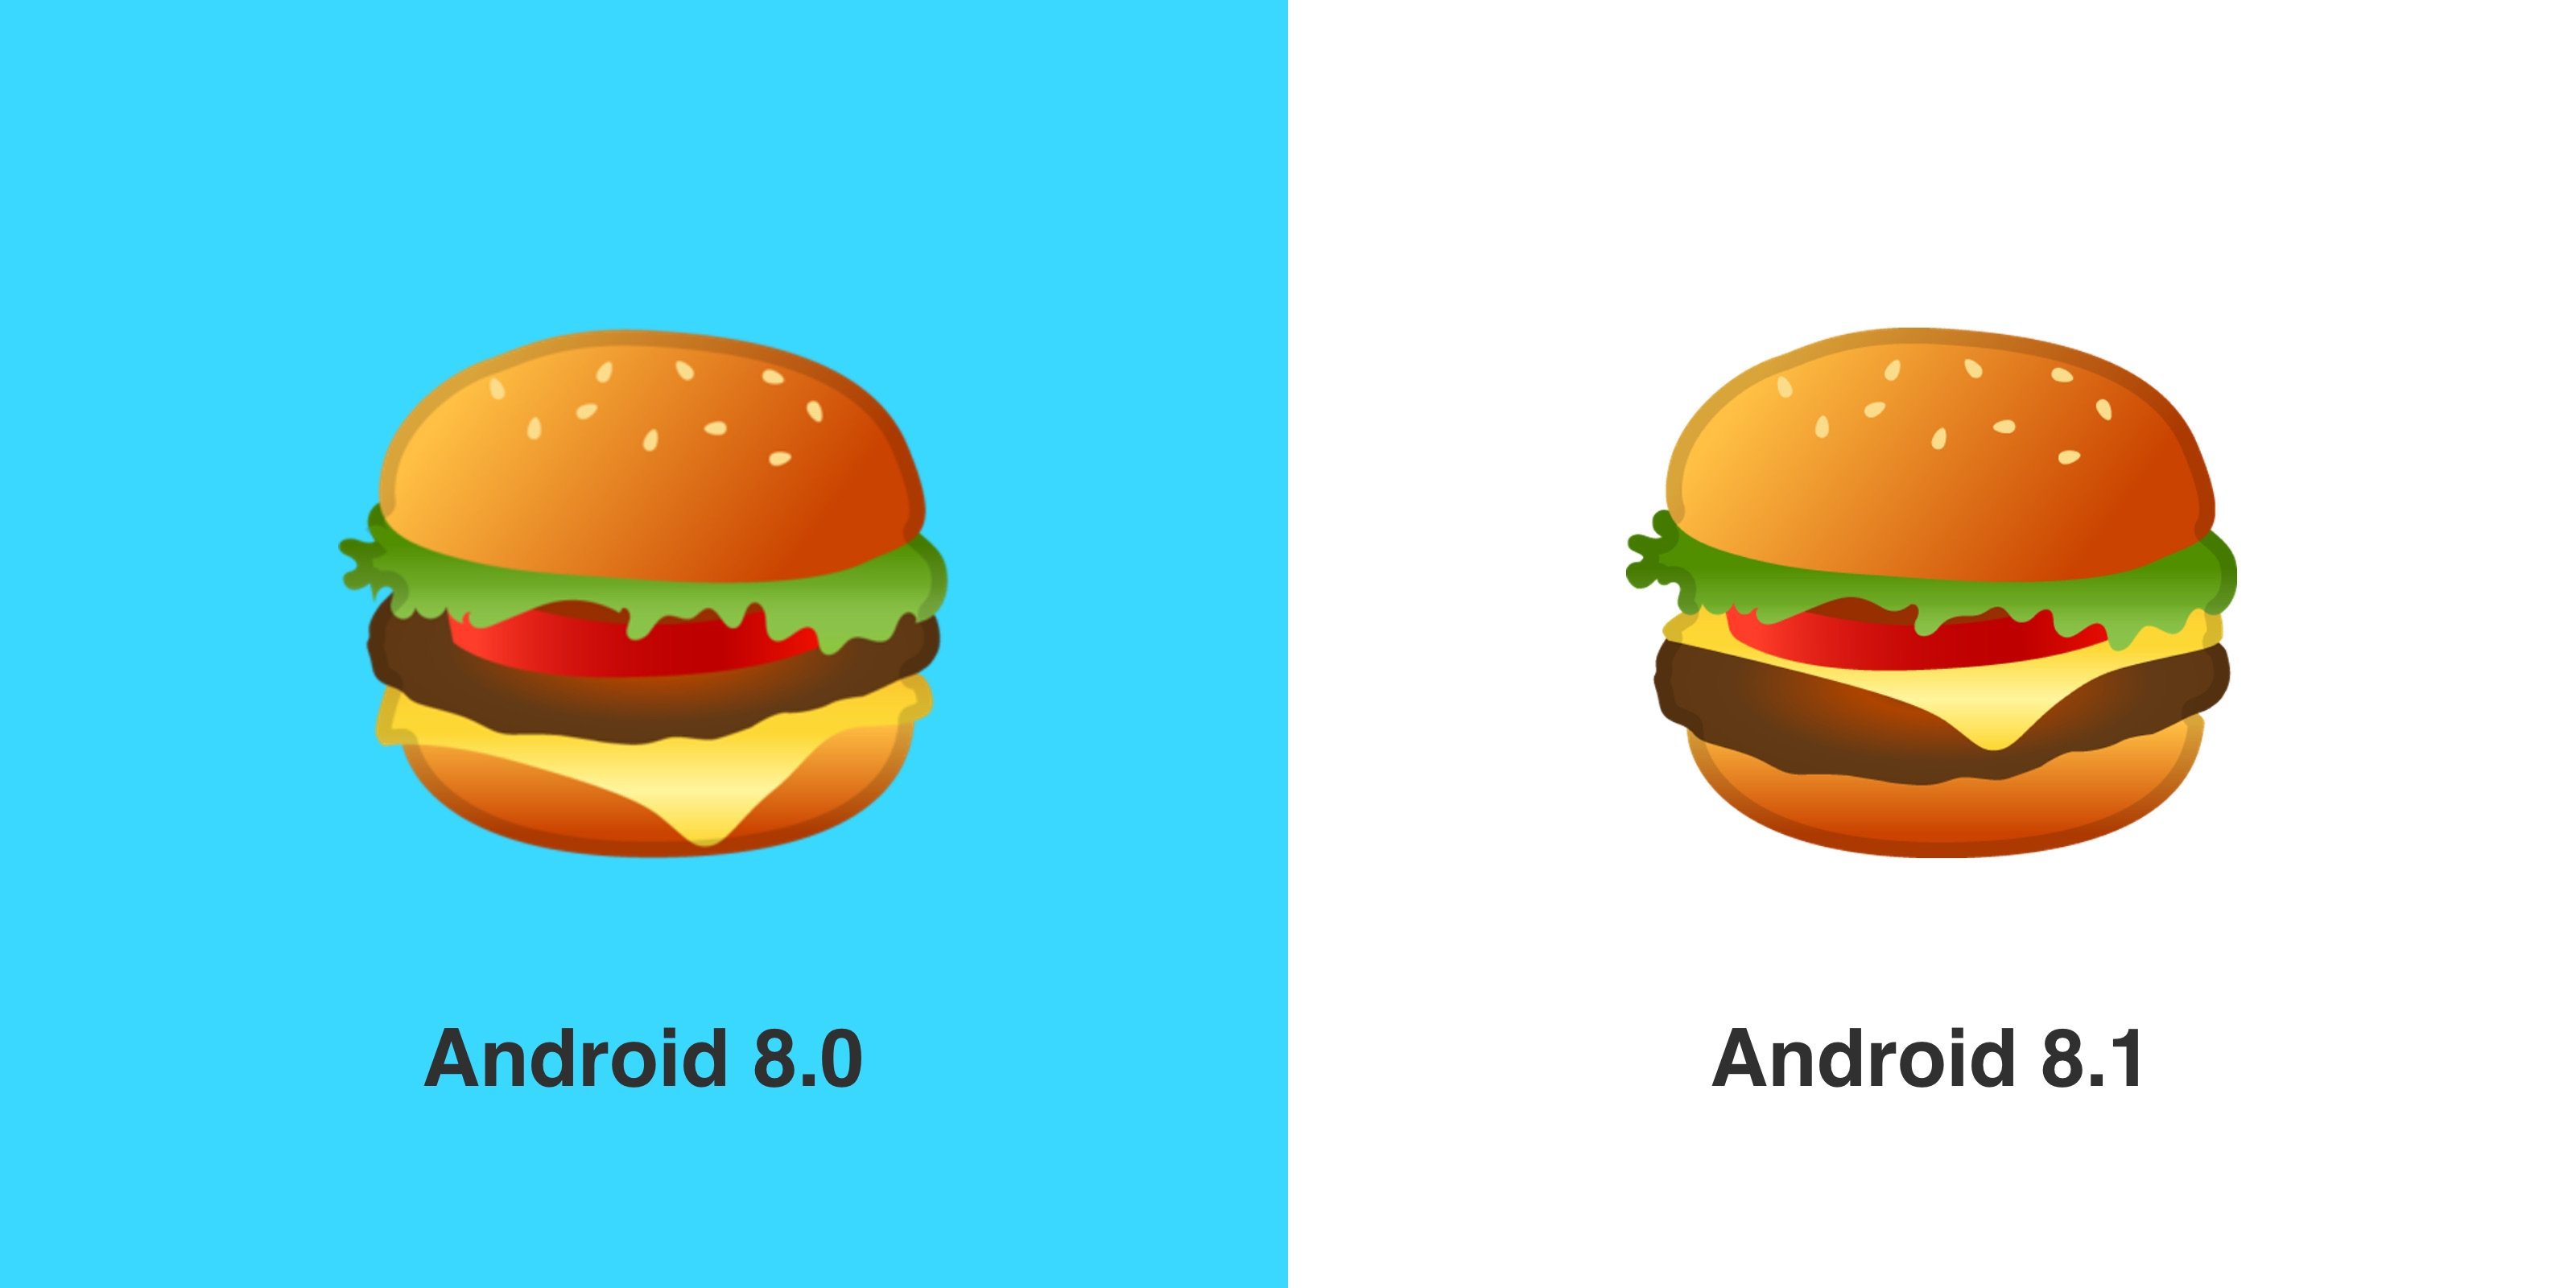 Burger-Emoji: Bei Android 8.1 liegt der Käse auf der ...